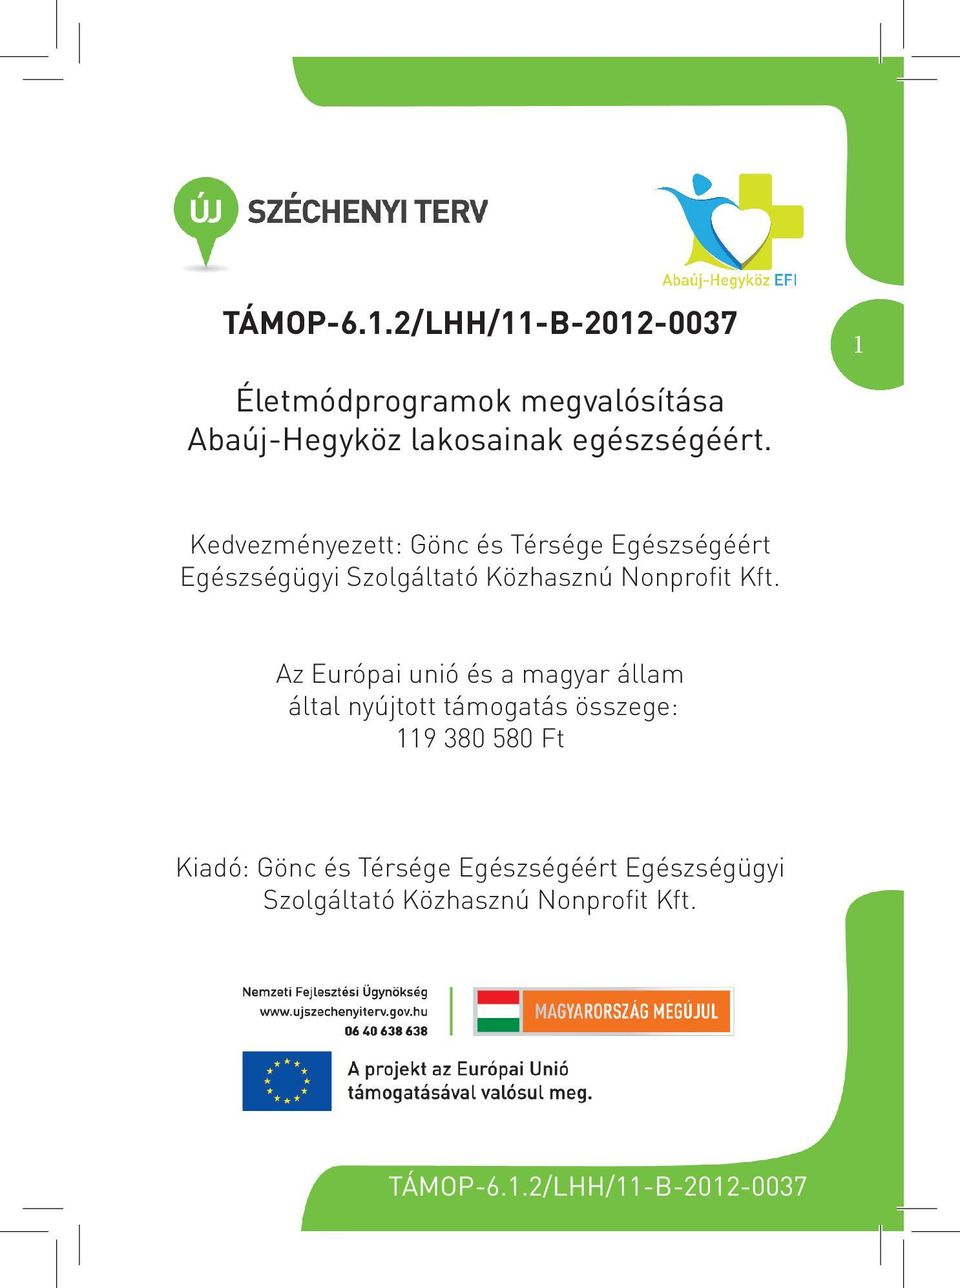 Az Európai unió és a magyar állam által nyújtott támogatás összege: 119 380 580 Ft Kiadó: Gönc és